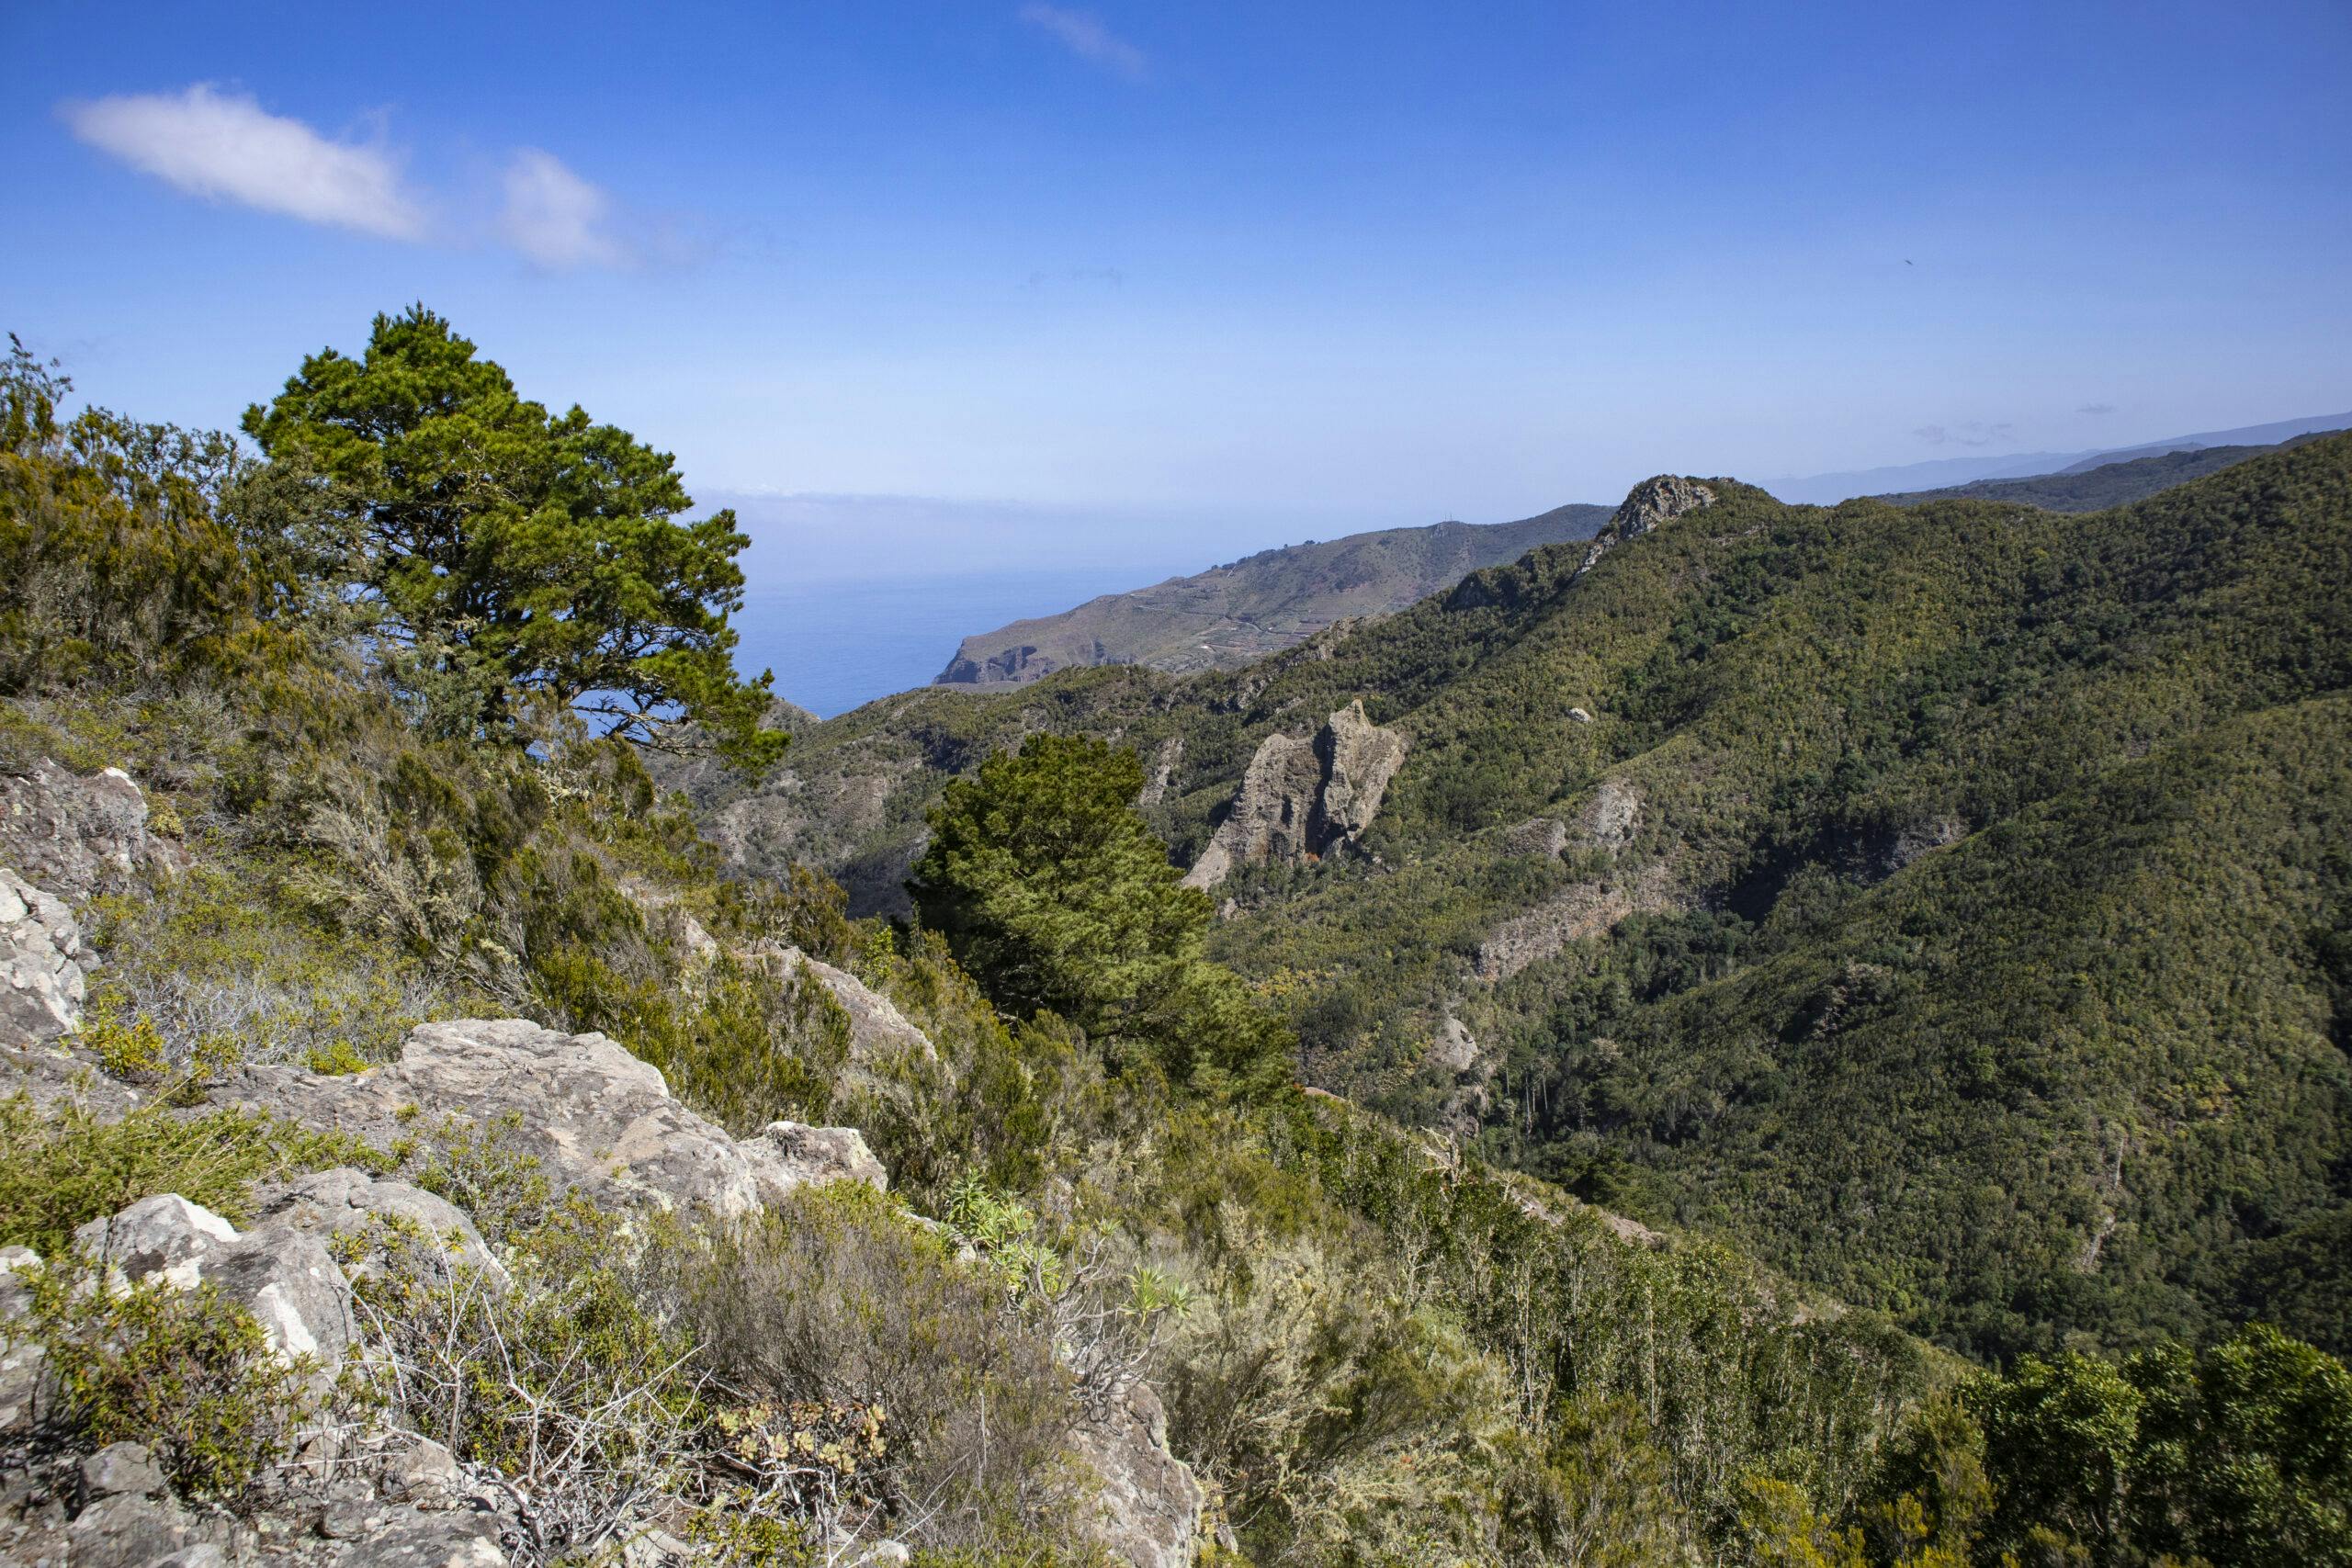 Talavera – challenging Teno circular hike past old hamlets